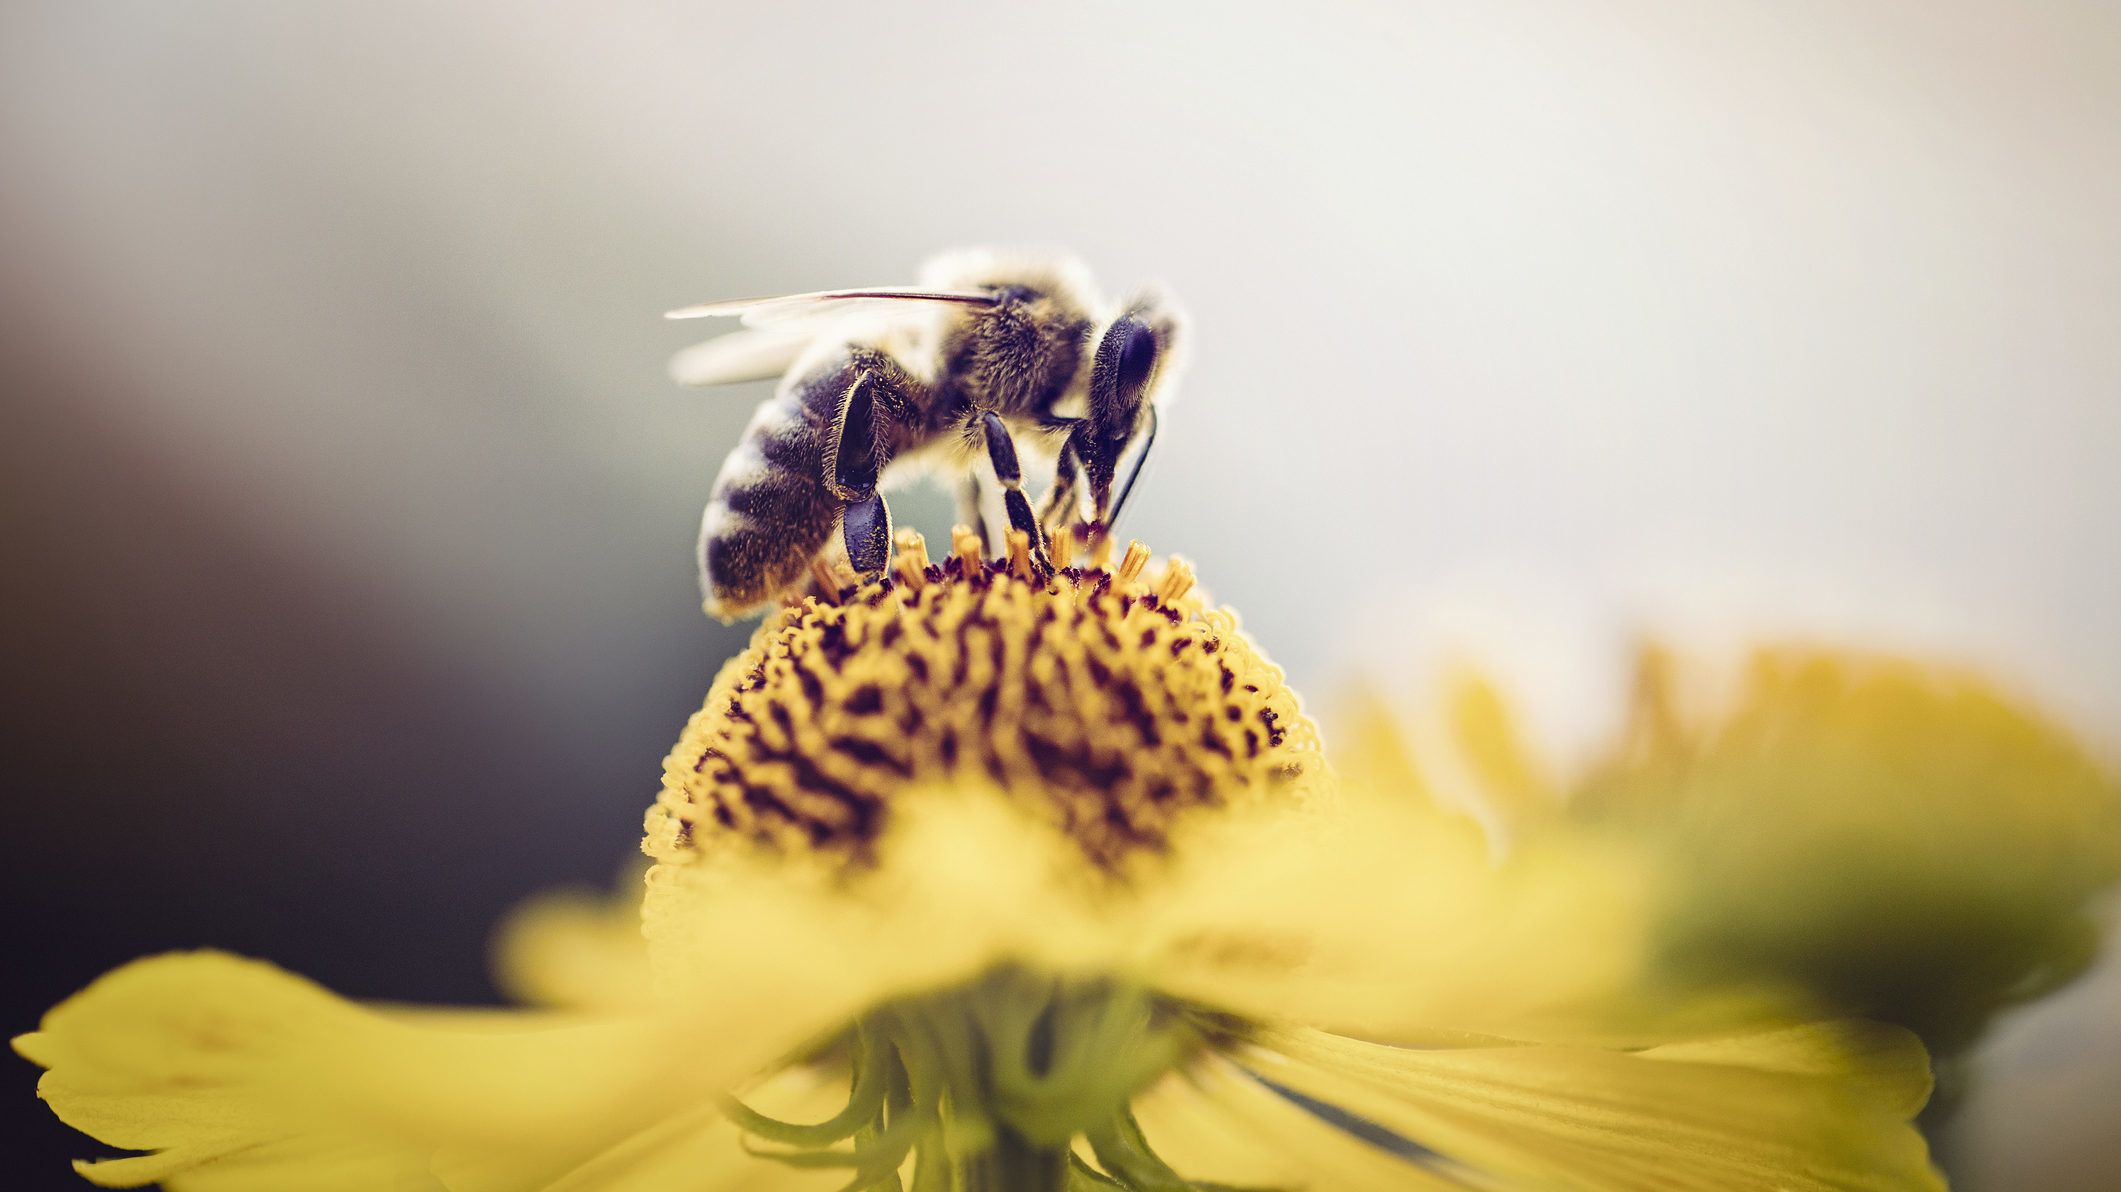 Tizedére rövidítheti a méhek életét két népszerű rovarölőszer